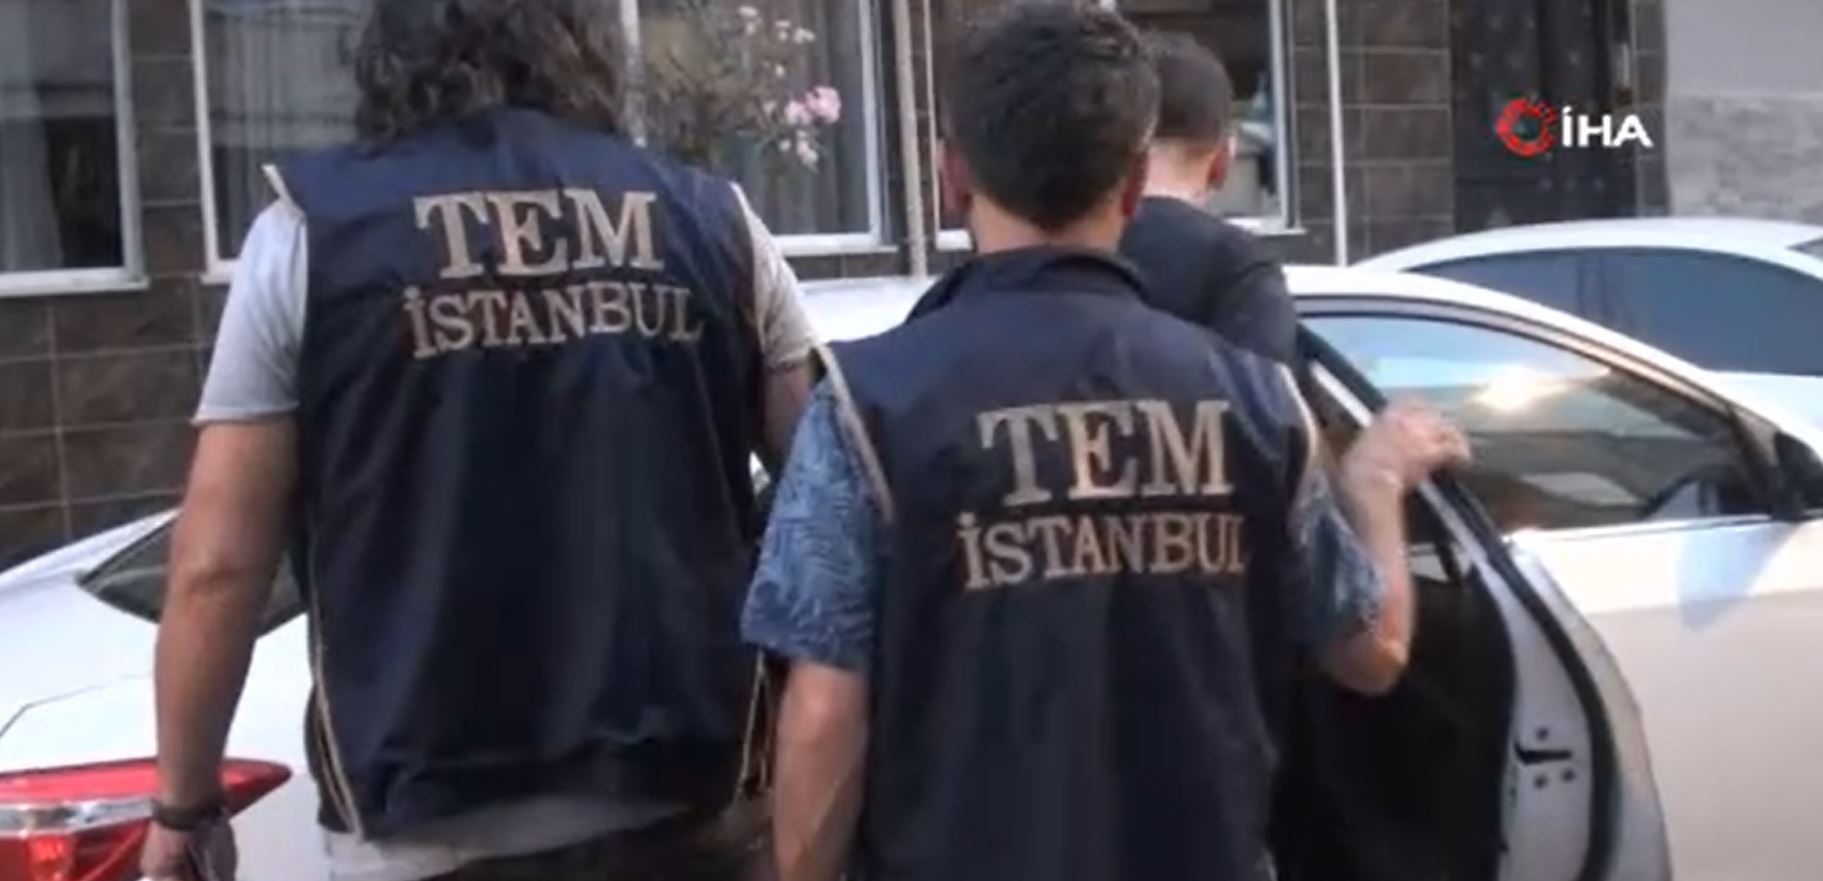 İstanbul’da FETÖ operasyonu: 9 gözaltı